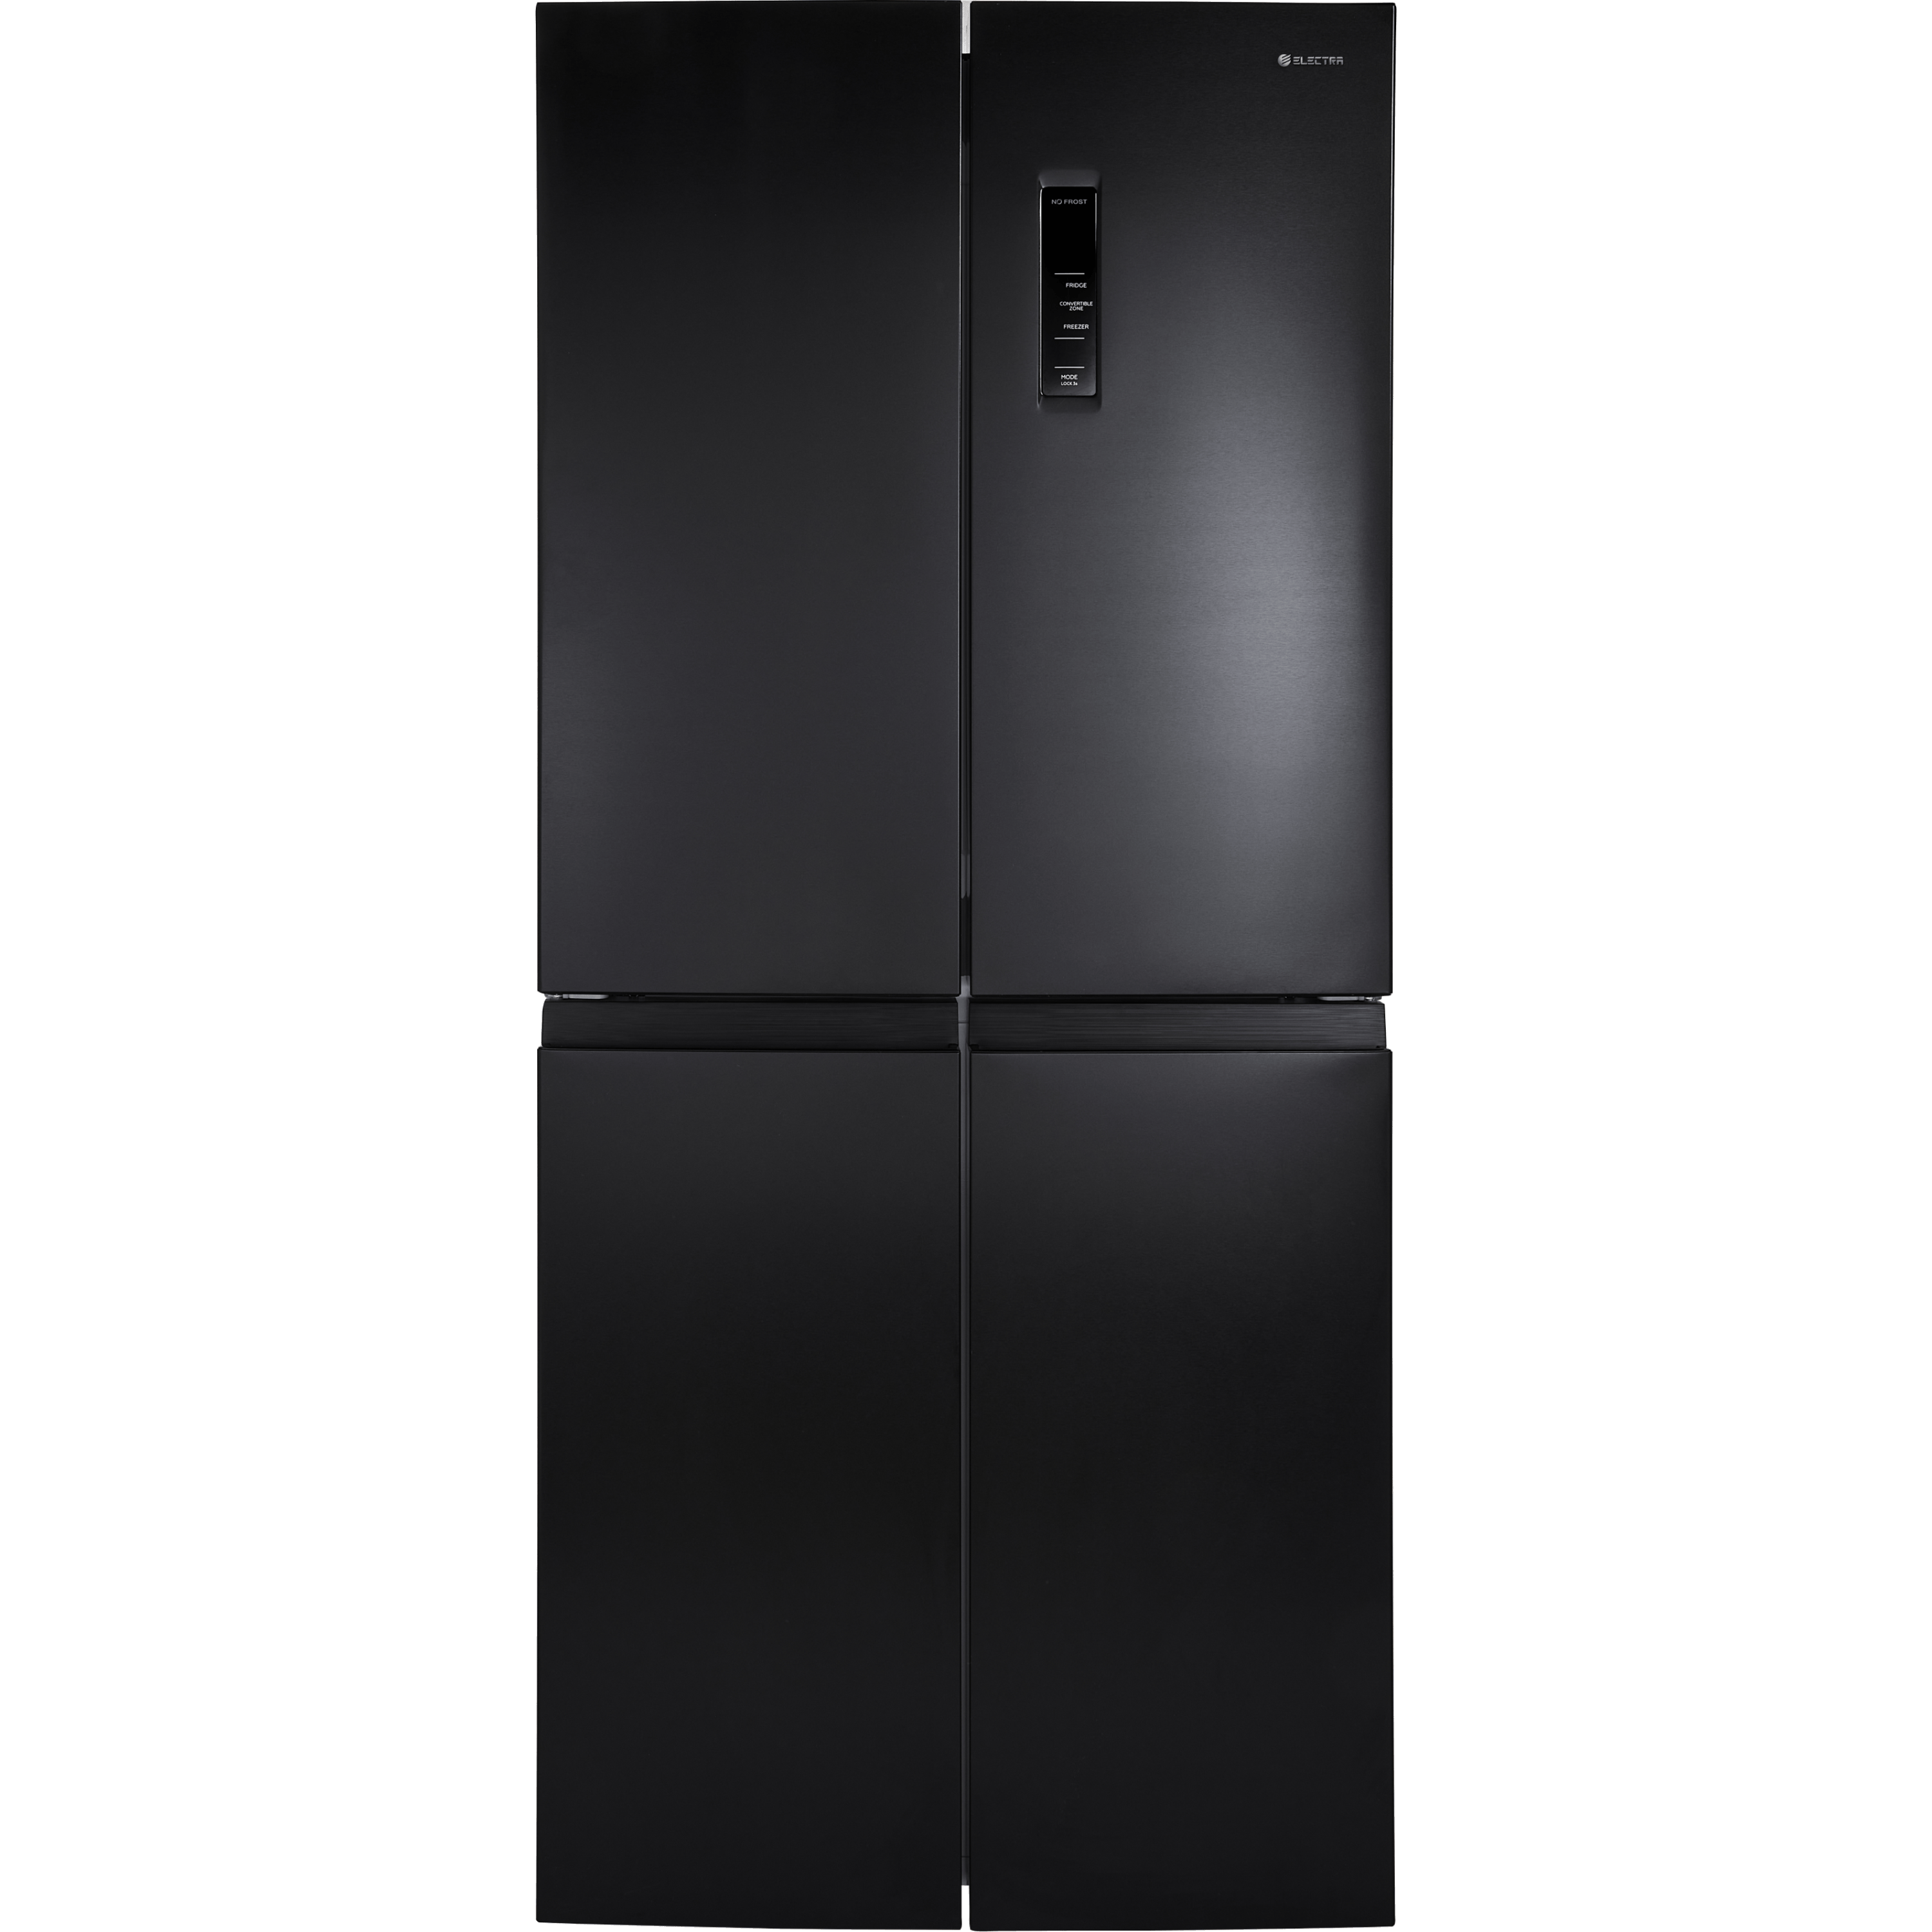 ثلاجة 4 أبواب الكترا EL522DN ELECTRA ستانلس ستيل أسود -ضمان اليكترا المستورد الرسمي